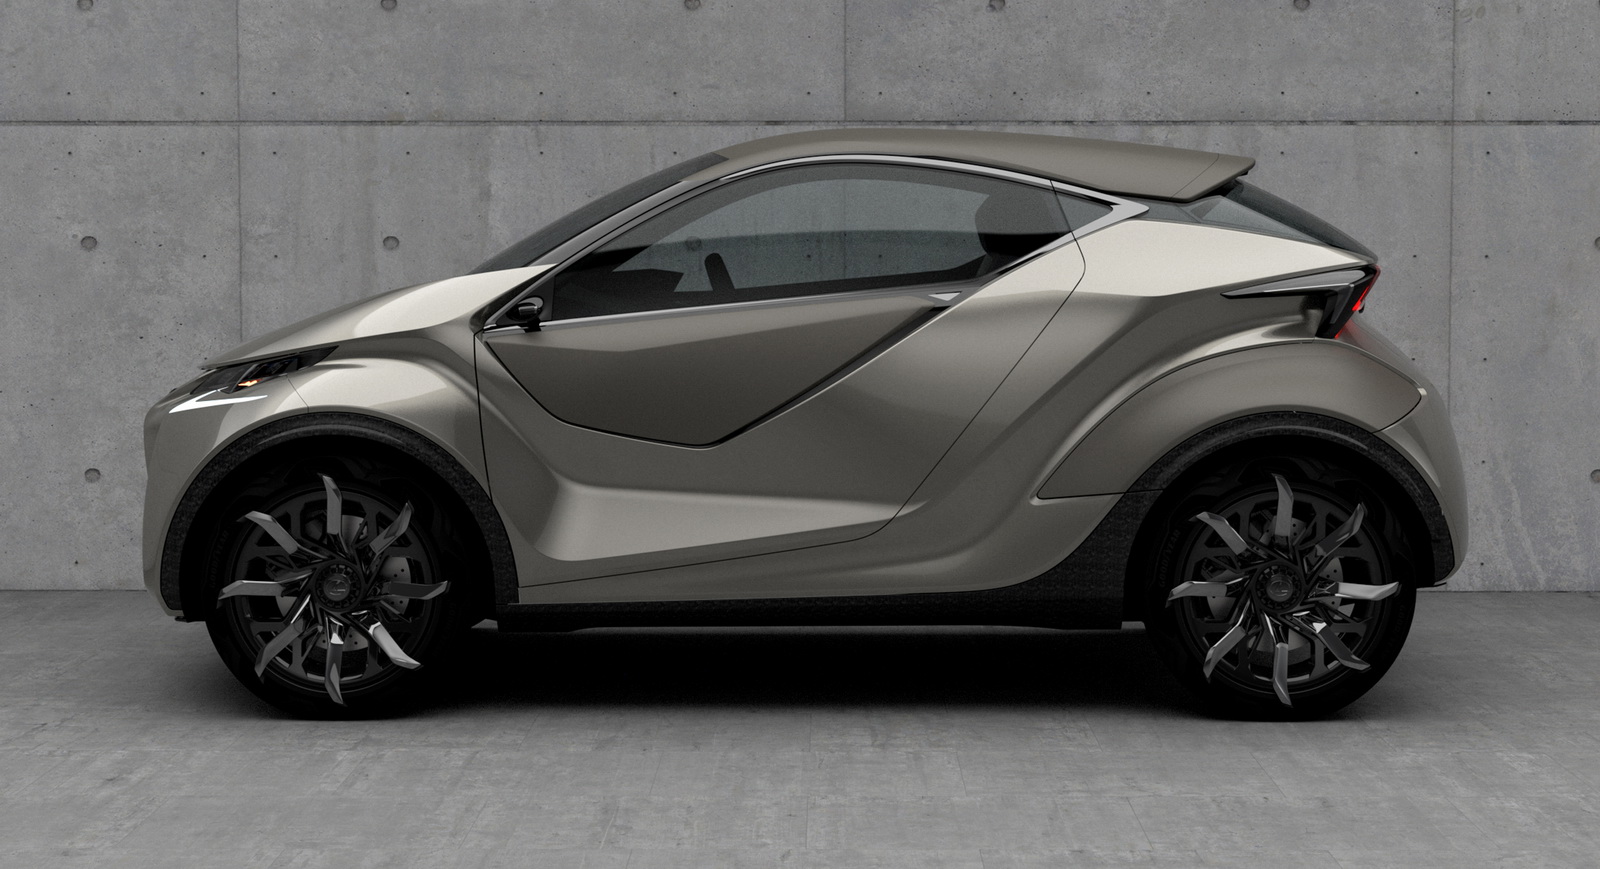 Lexus sắp ra mắt xe giá rẻ: Anh em với Toyota Wigo, thiết kế đẹp, động cơ hybrid 1.5L - Ảnh 2.